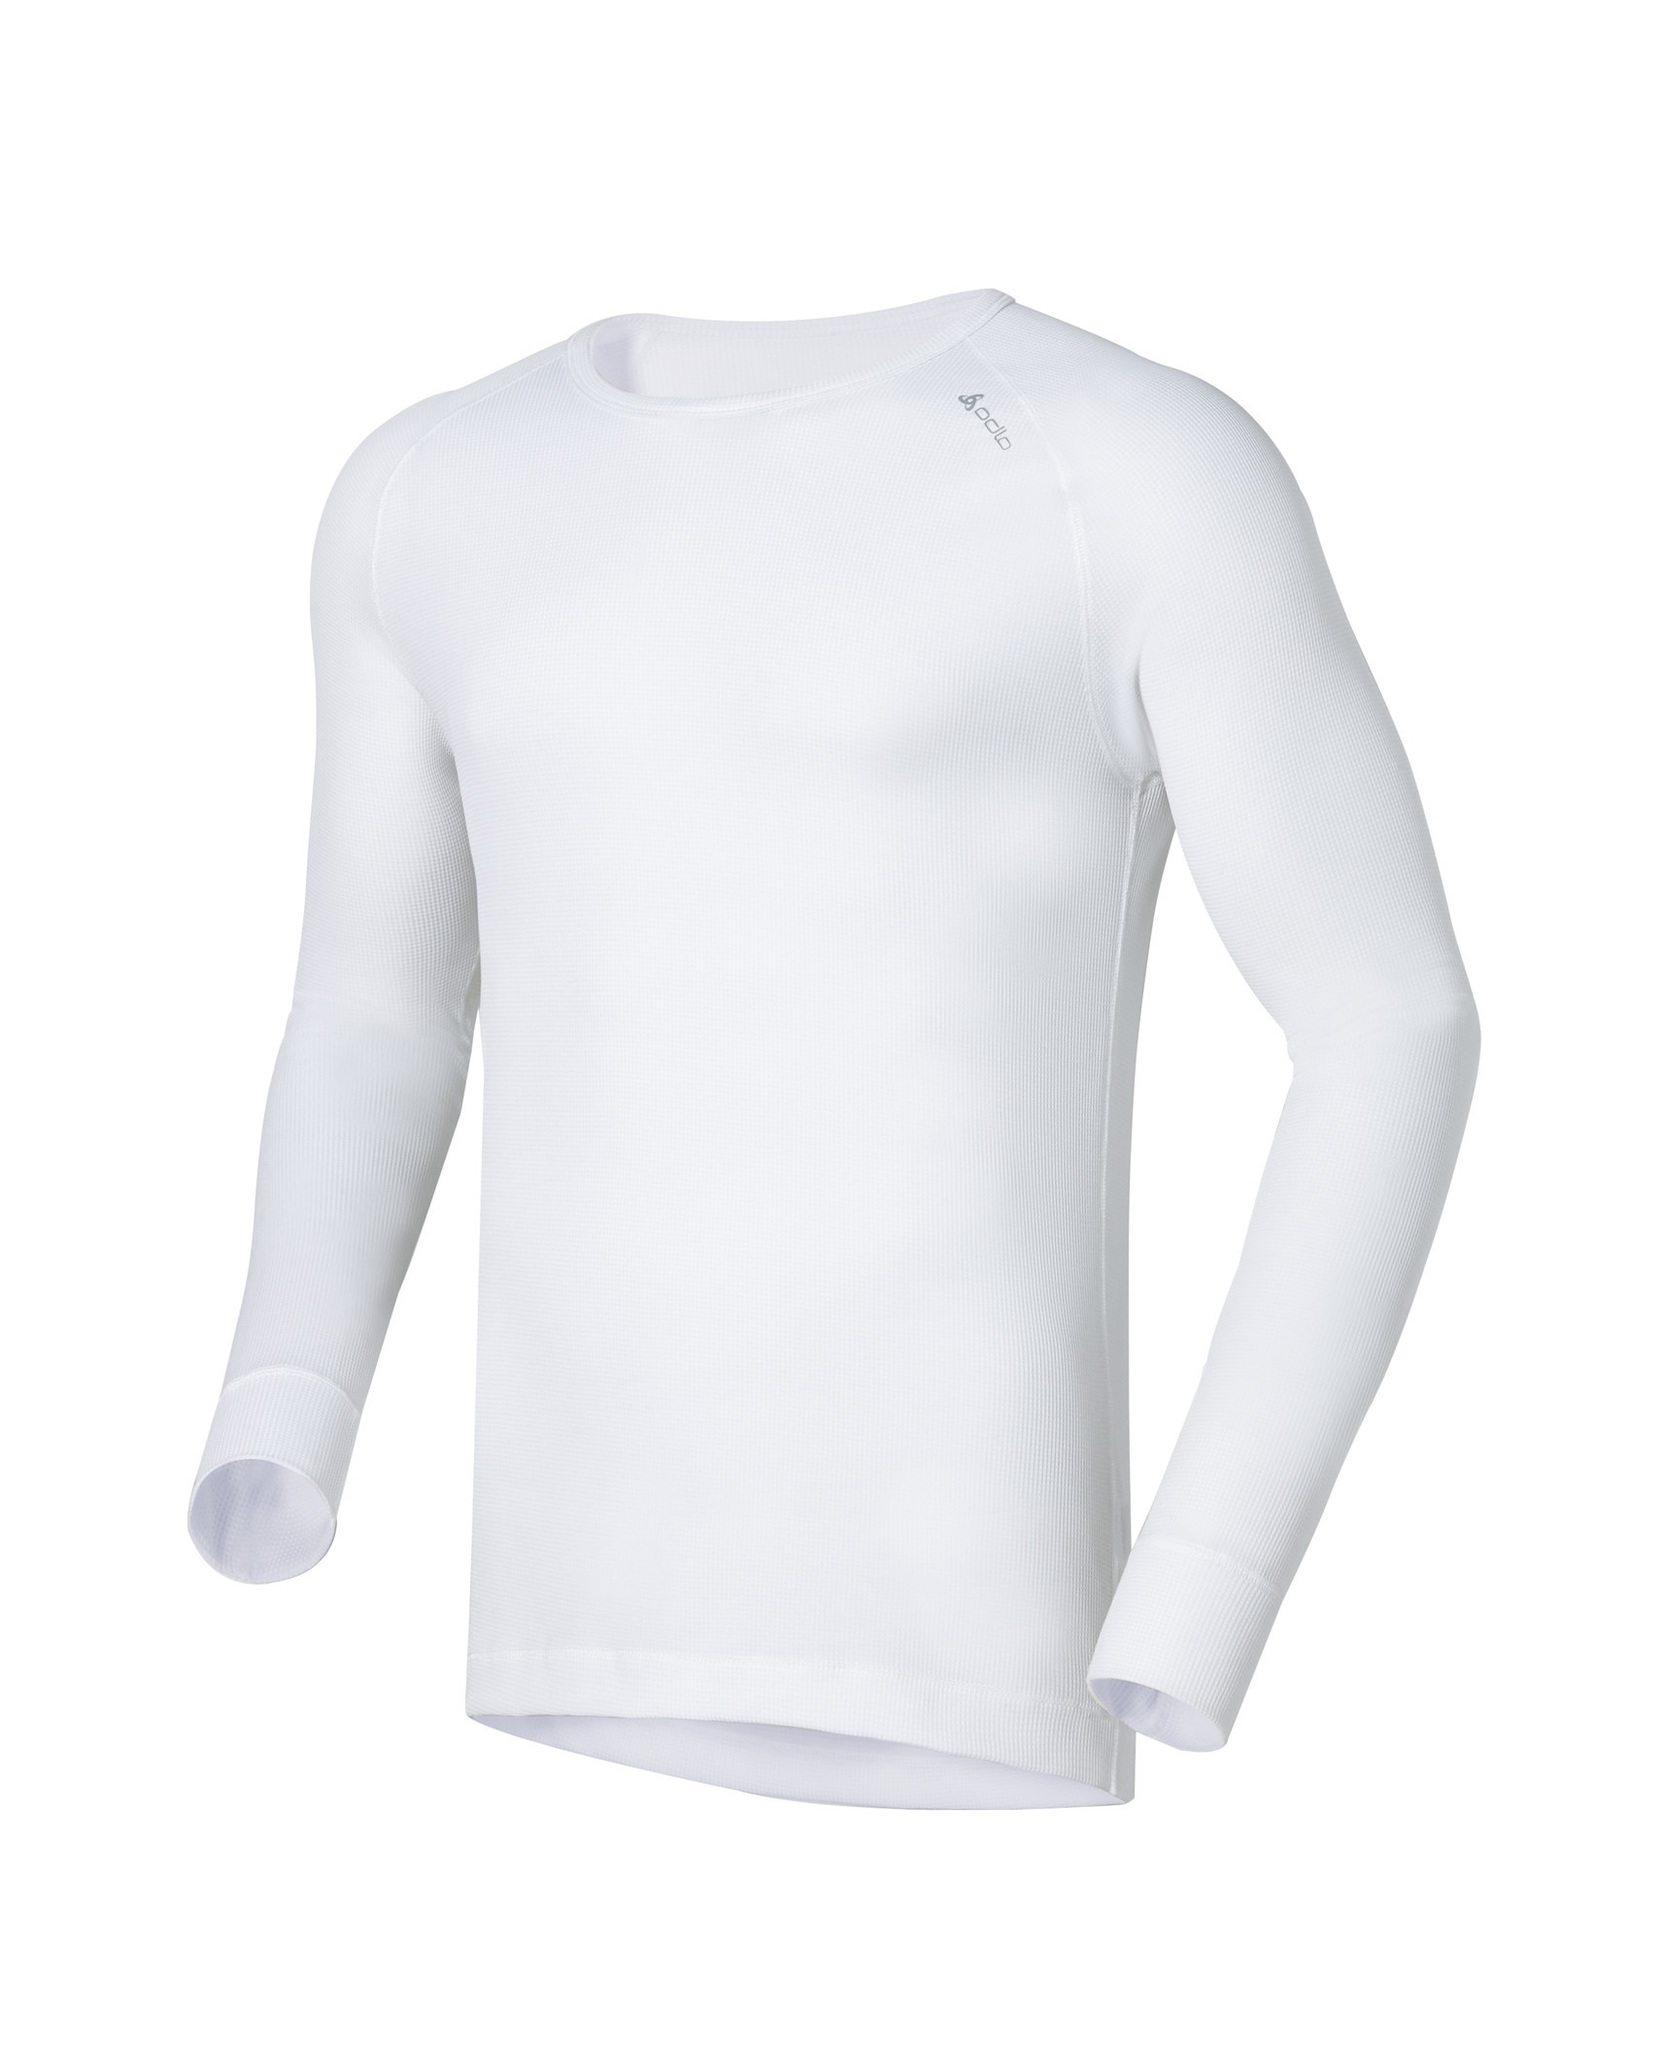 Мужское термобелье футболка с длинным рукавом Odlo L/S Crew Neck Cubic140052-10000 купить в Интернет-магазин Five-sport.ru